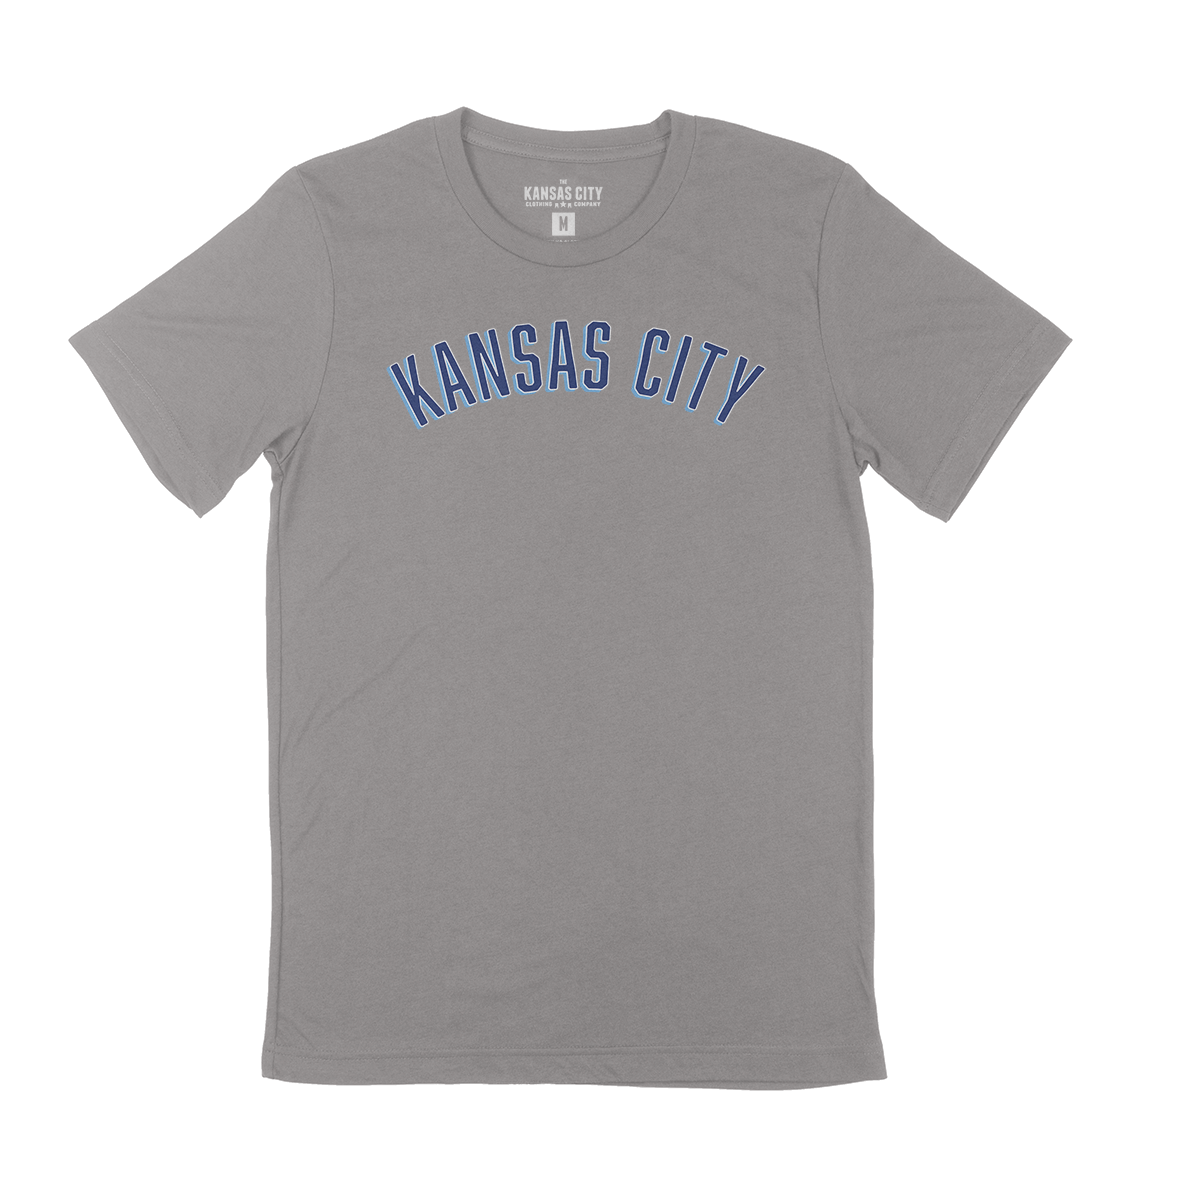 Kansas City, Missouri USA Cities ...